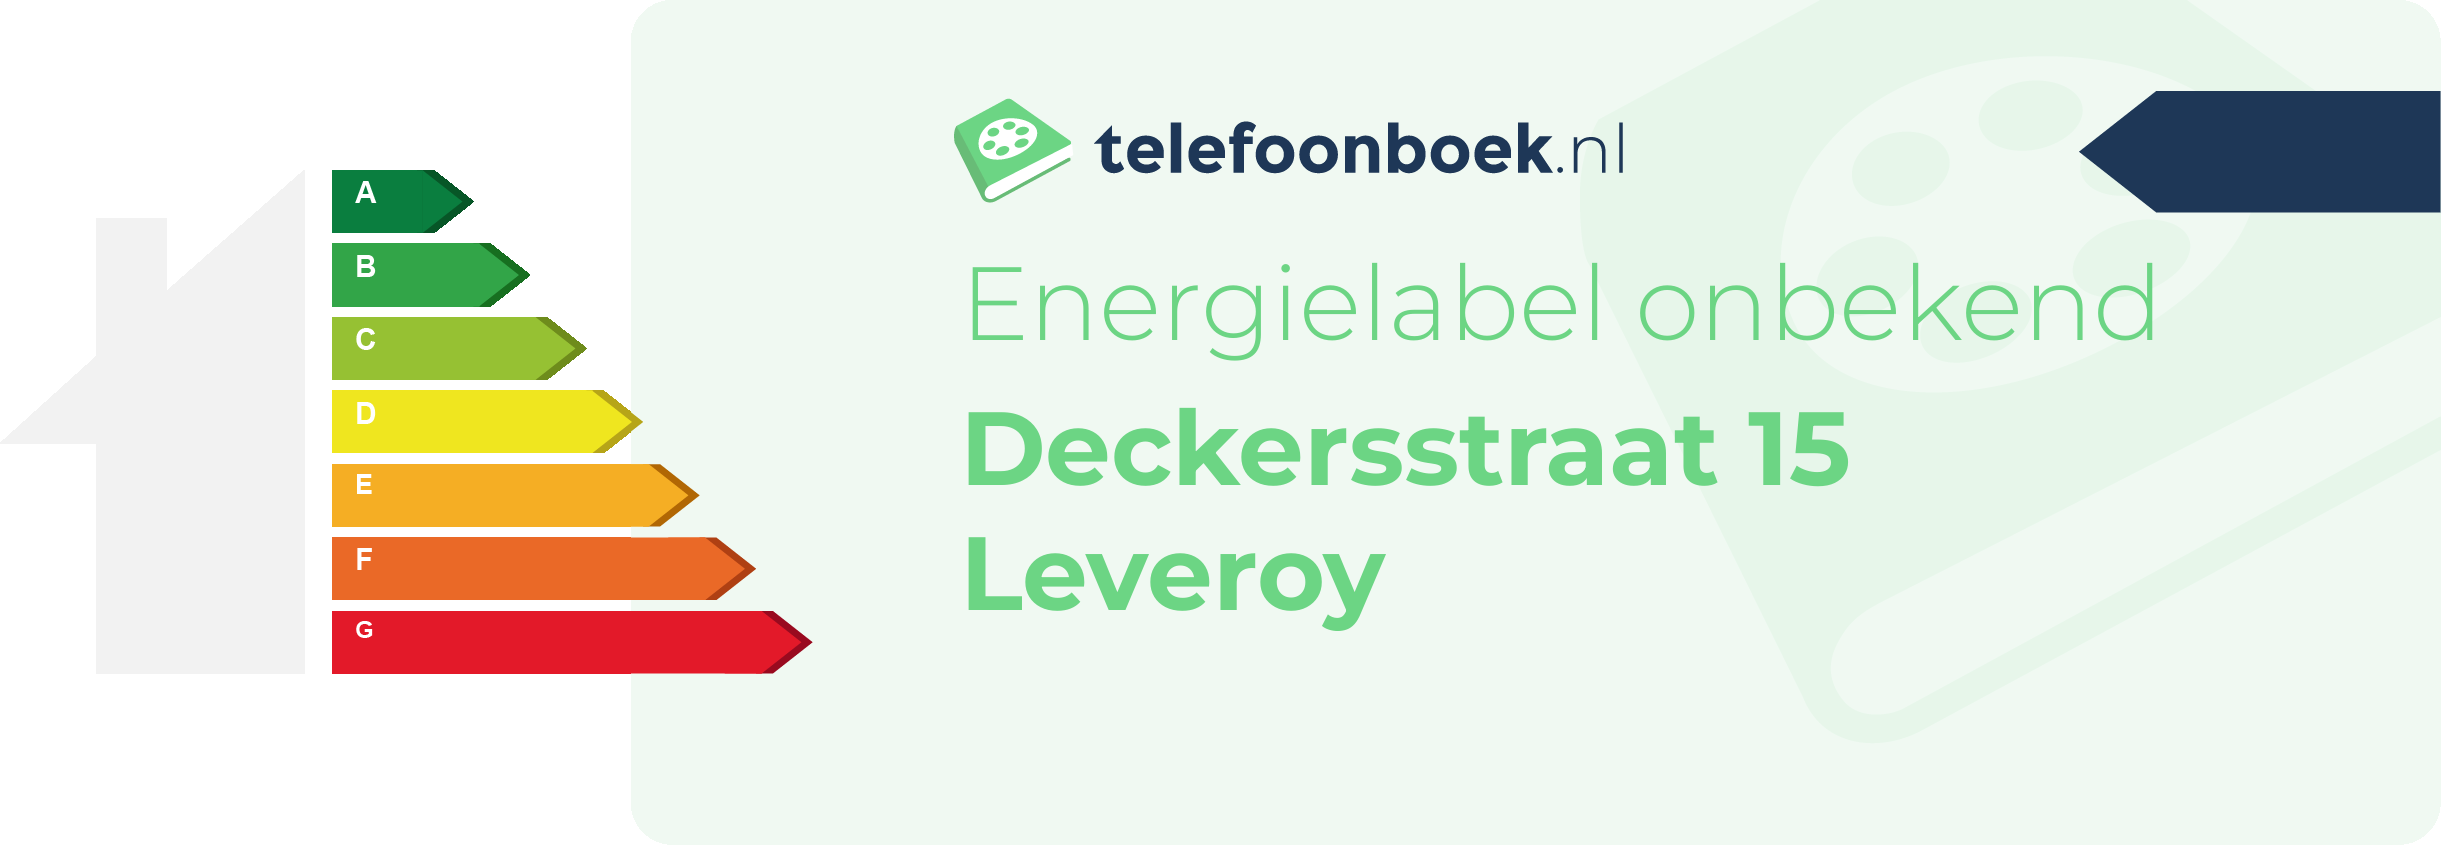 Energielabel Deckersstraat 15 Leveroy